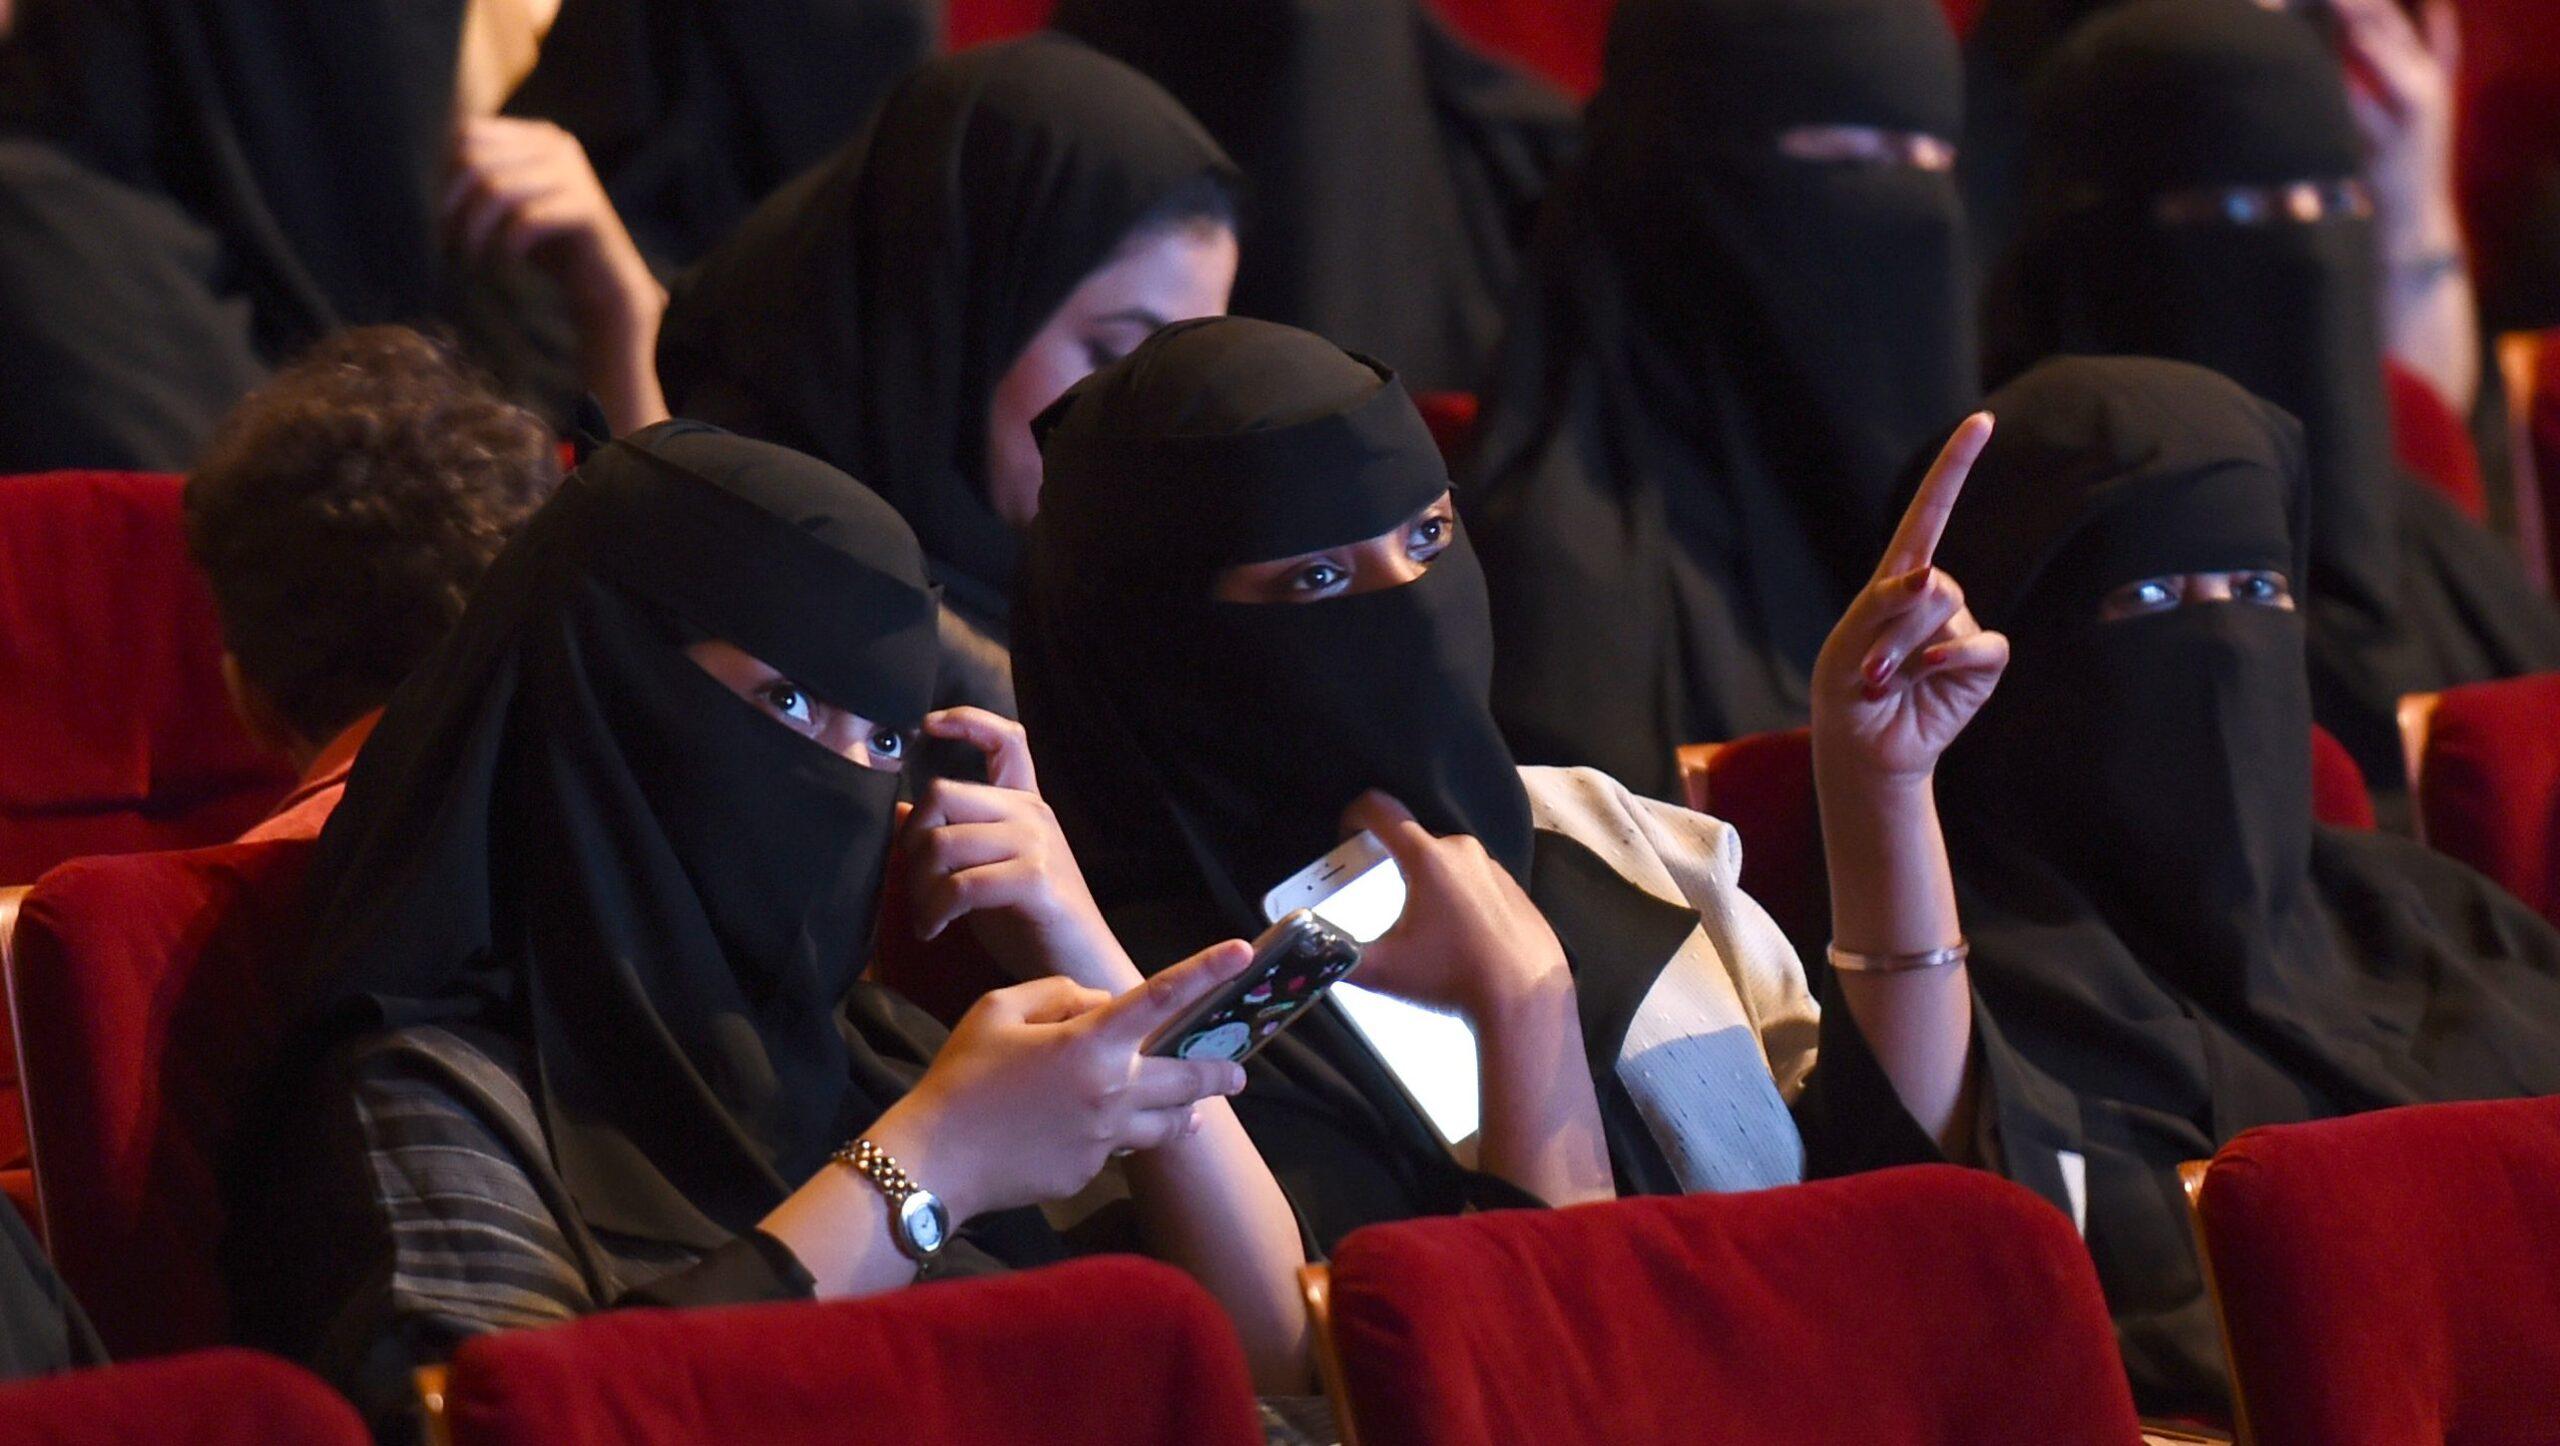 El cine vuelve a Arabia Saudita: las salas reabrirán luego de 35 años de prohibición